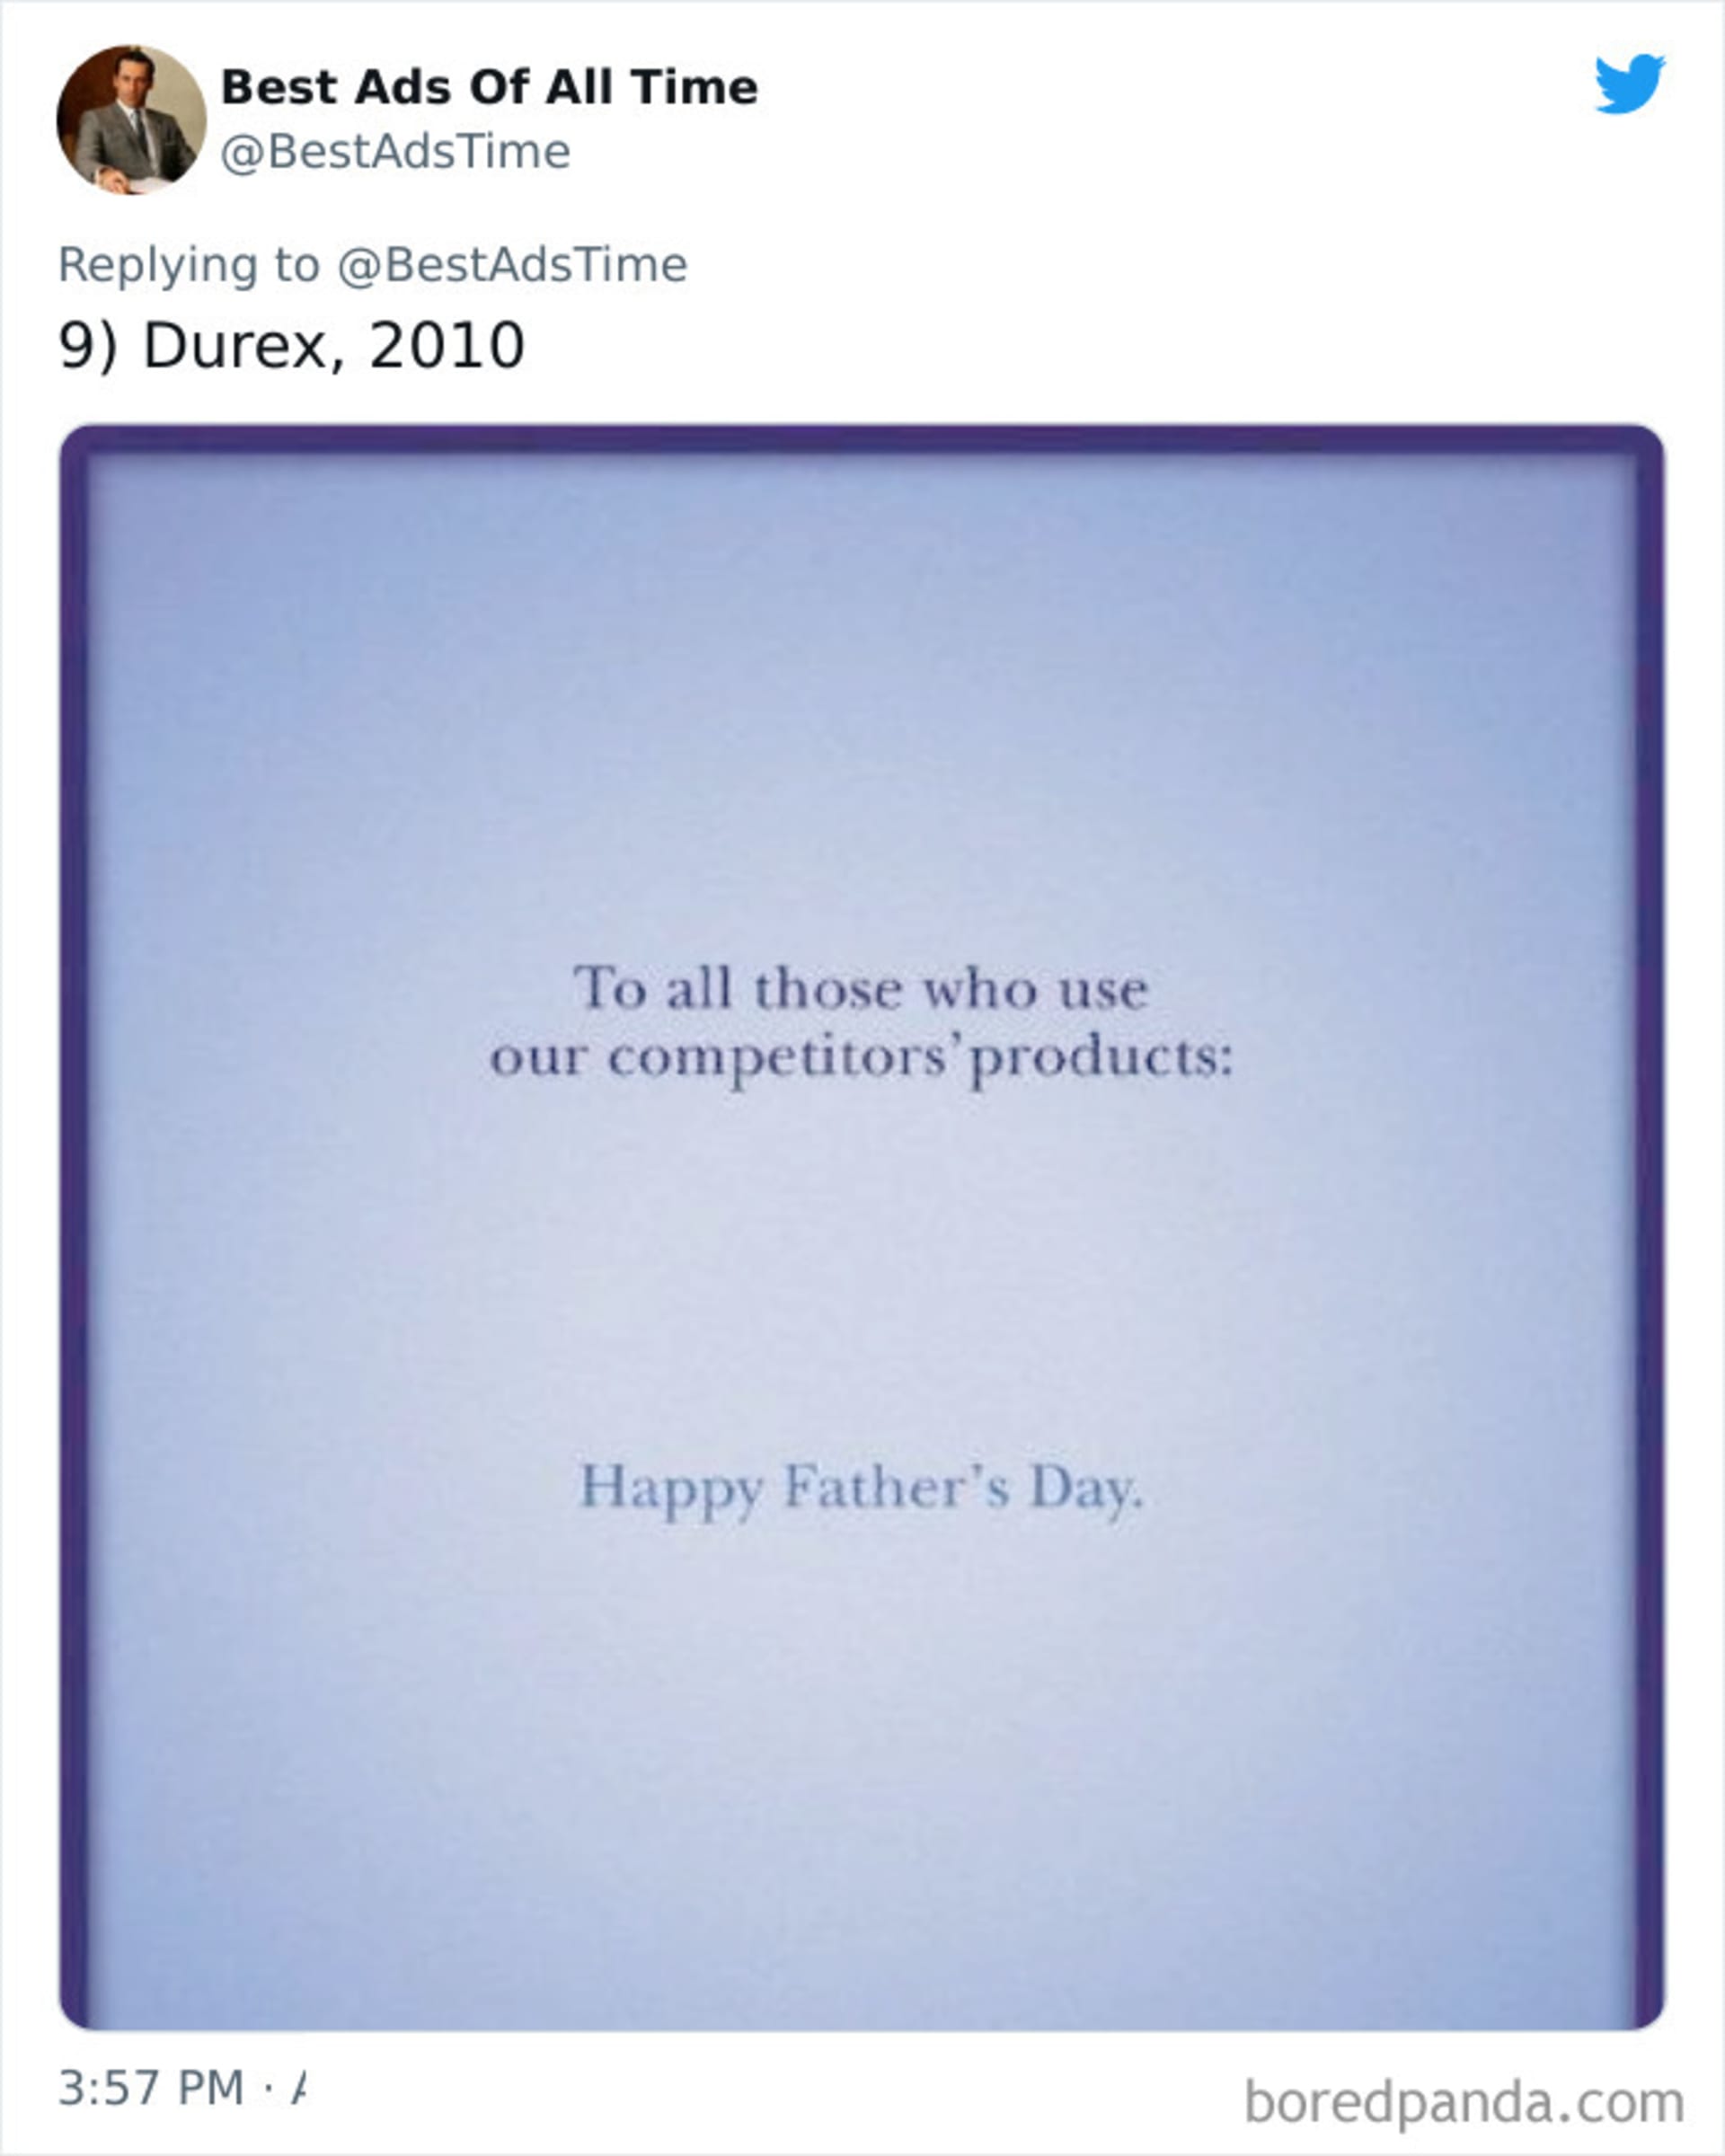 Všem, kteří se chrání konkurencí, šťastný Den otců. Durex.